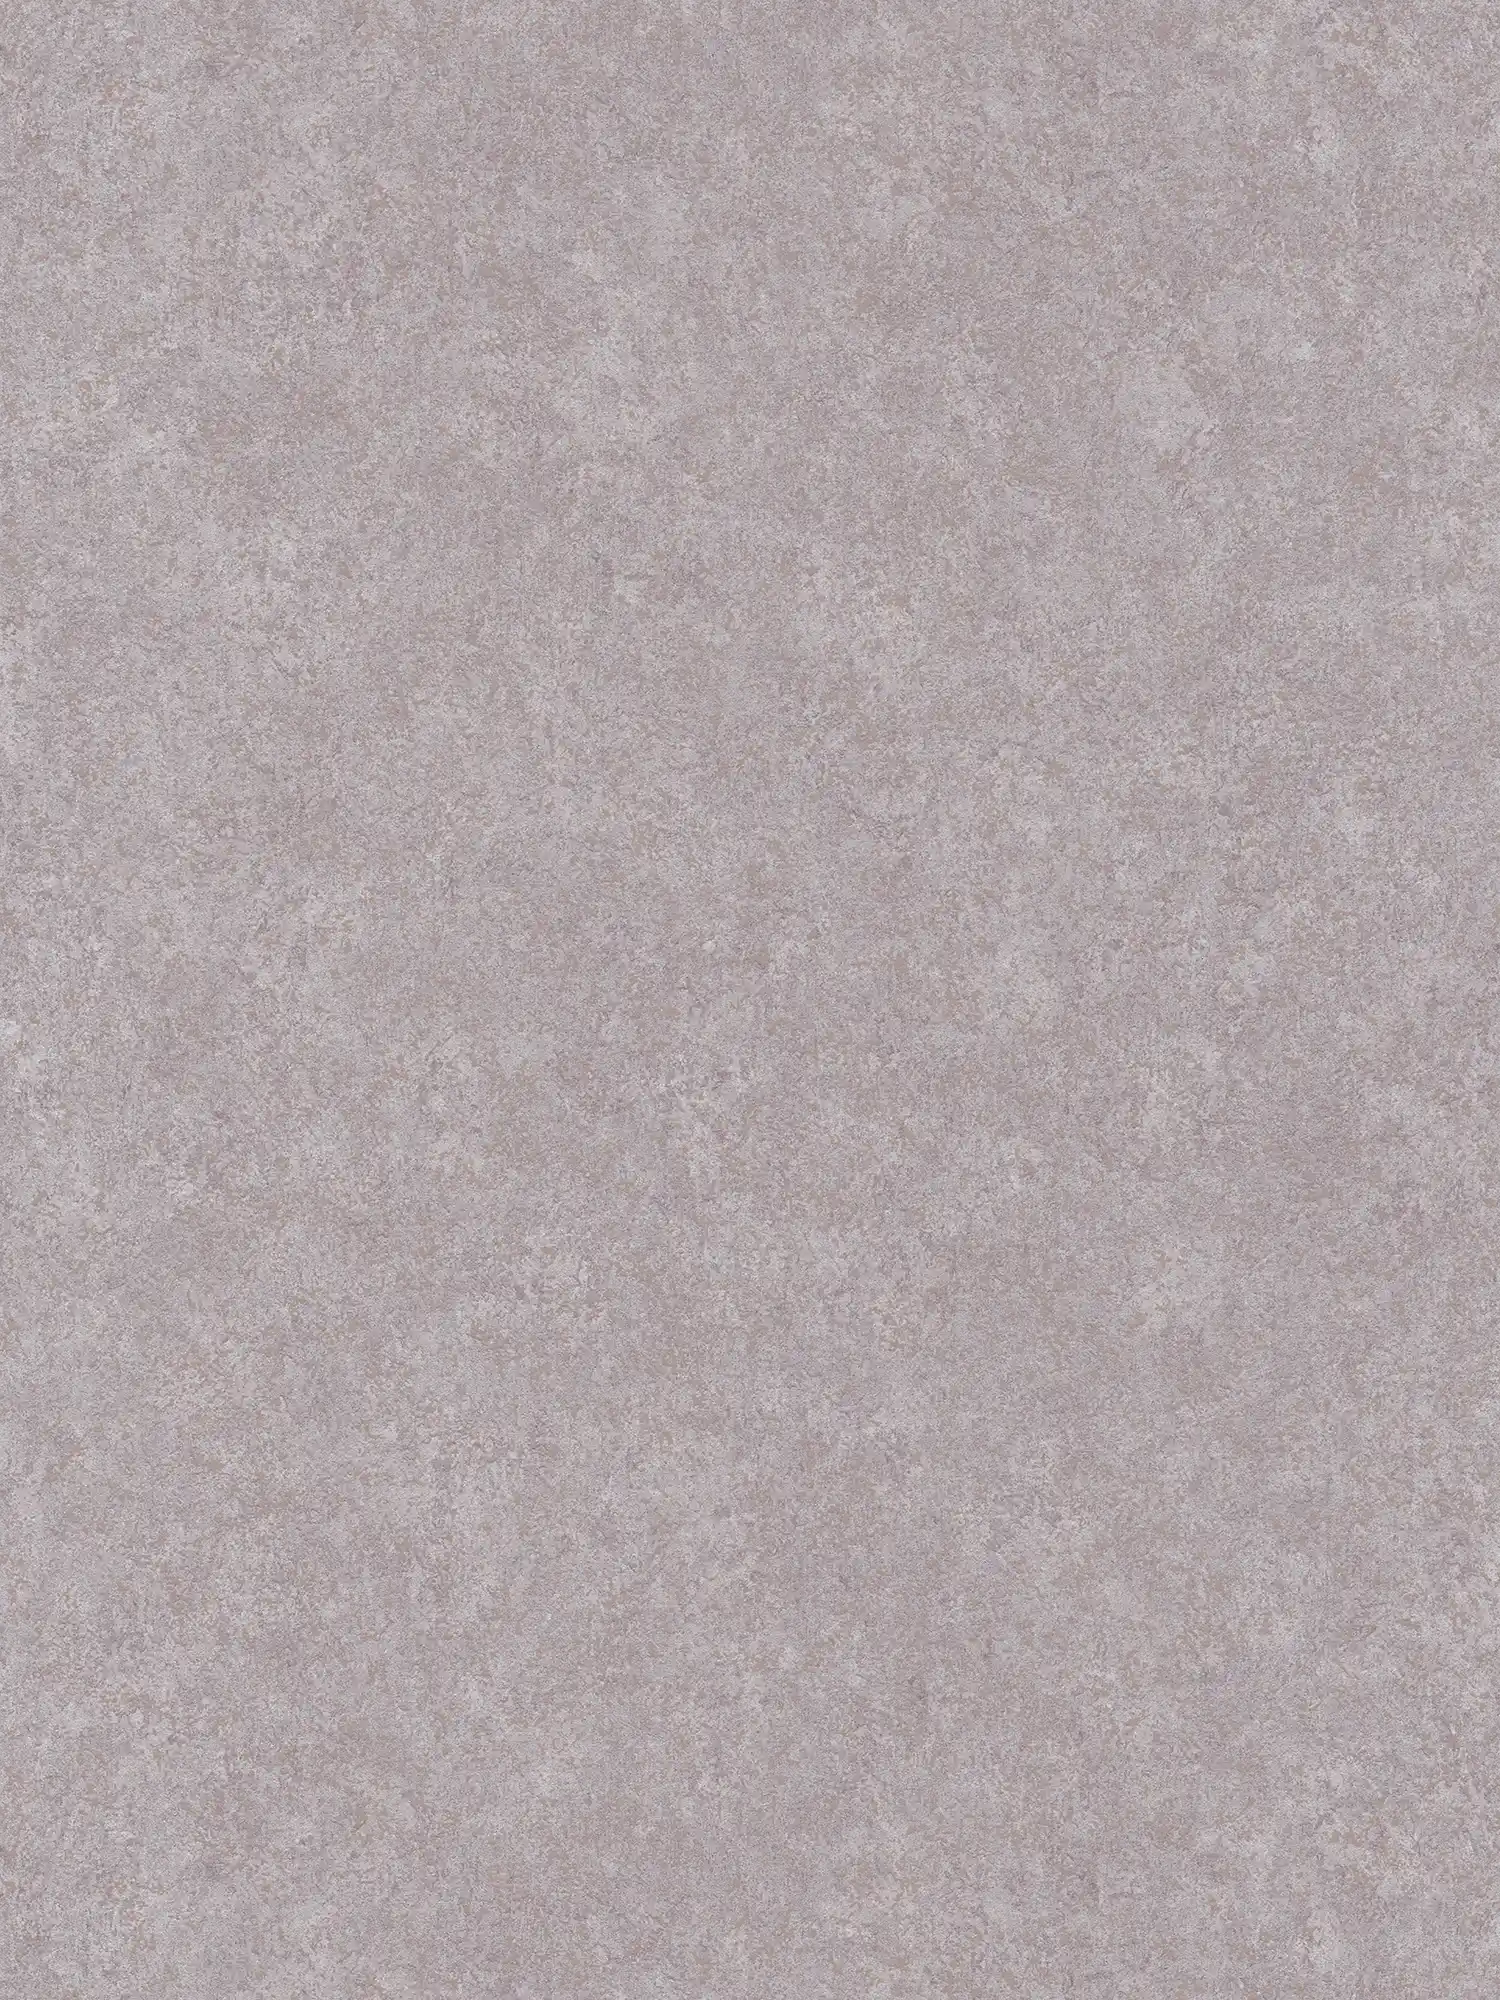 Papier peint neutre aspect plâtre avec surface mate - gris
